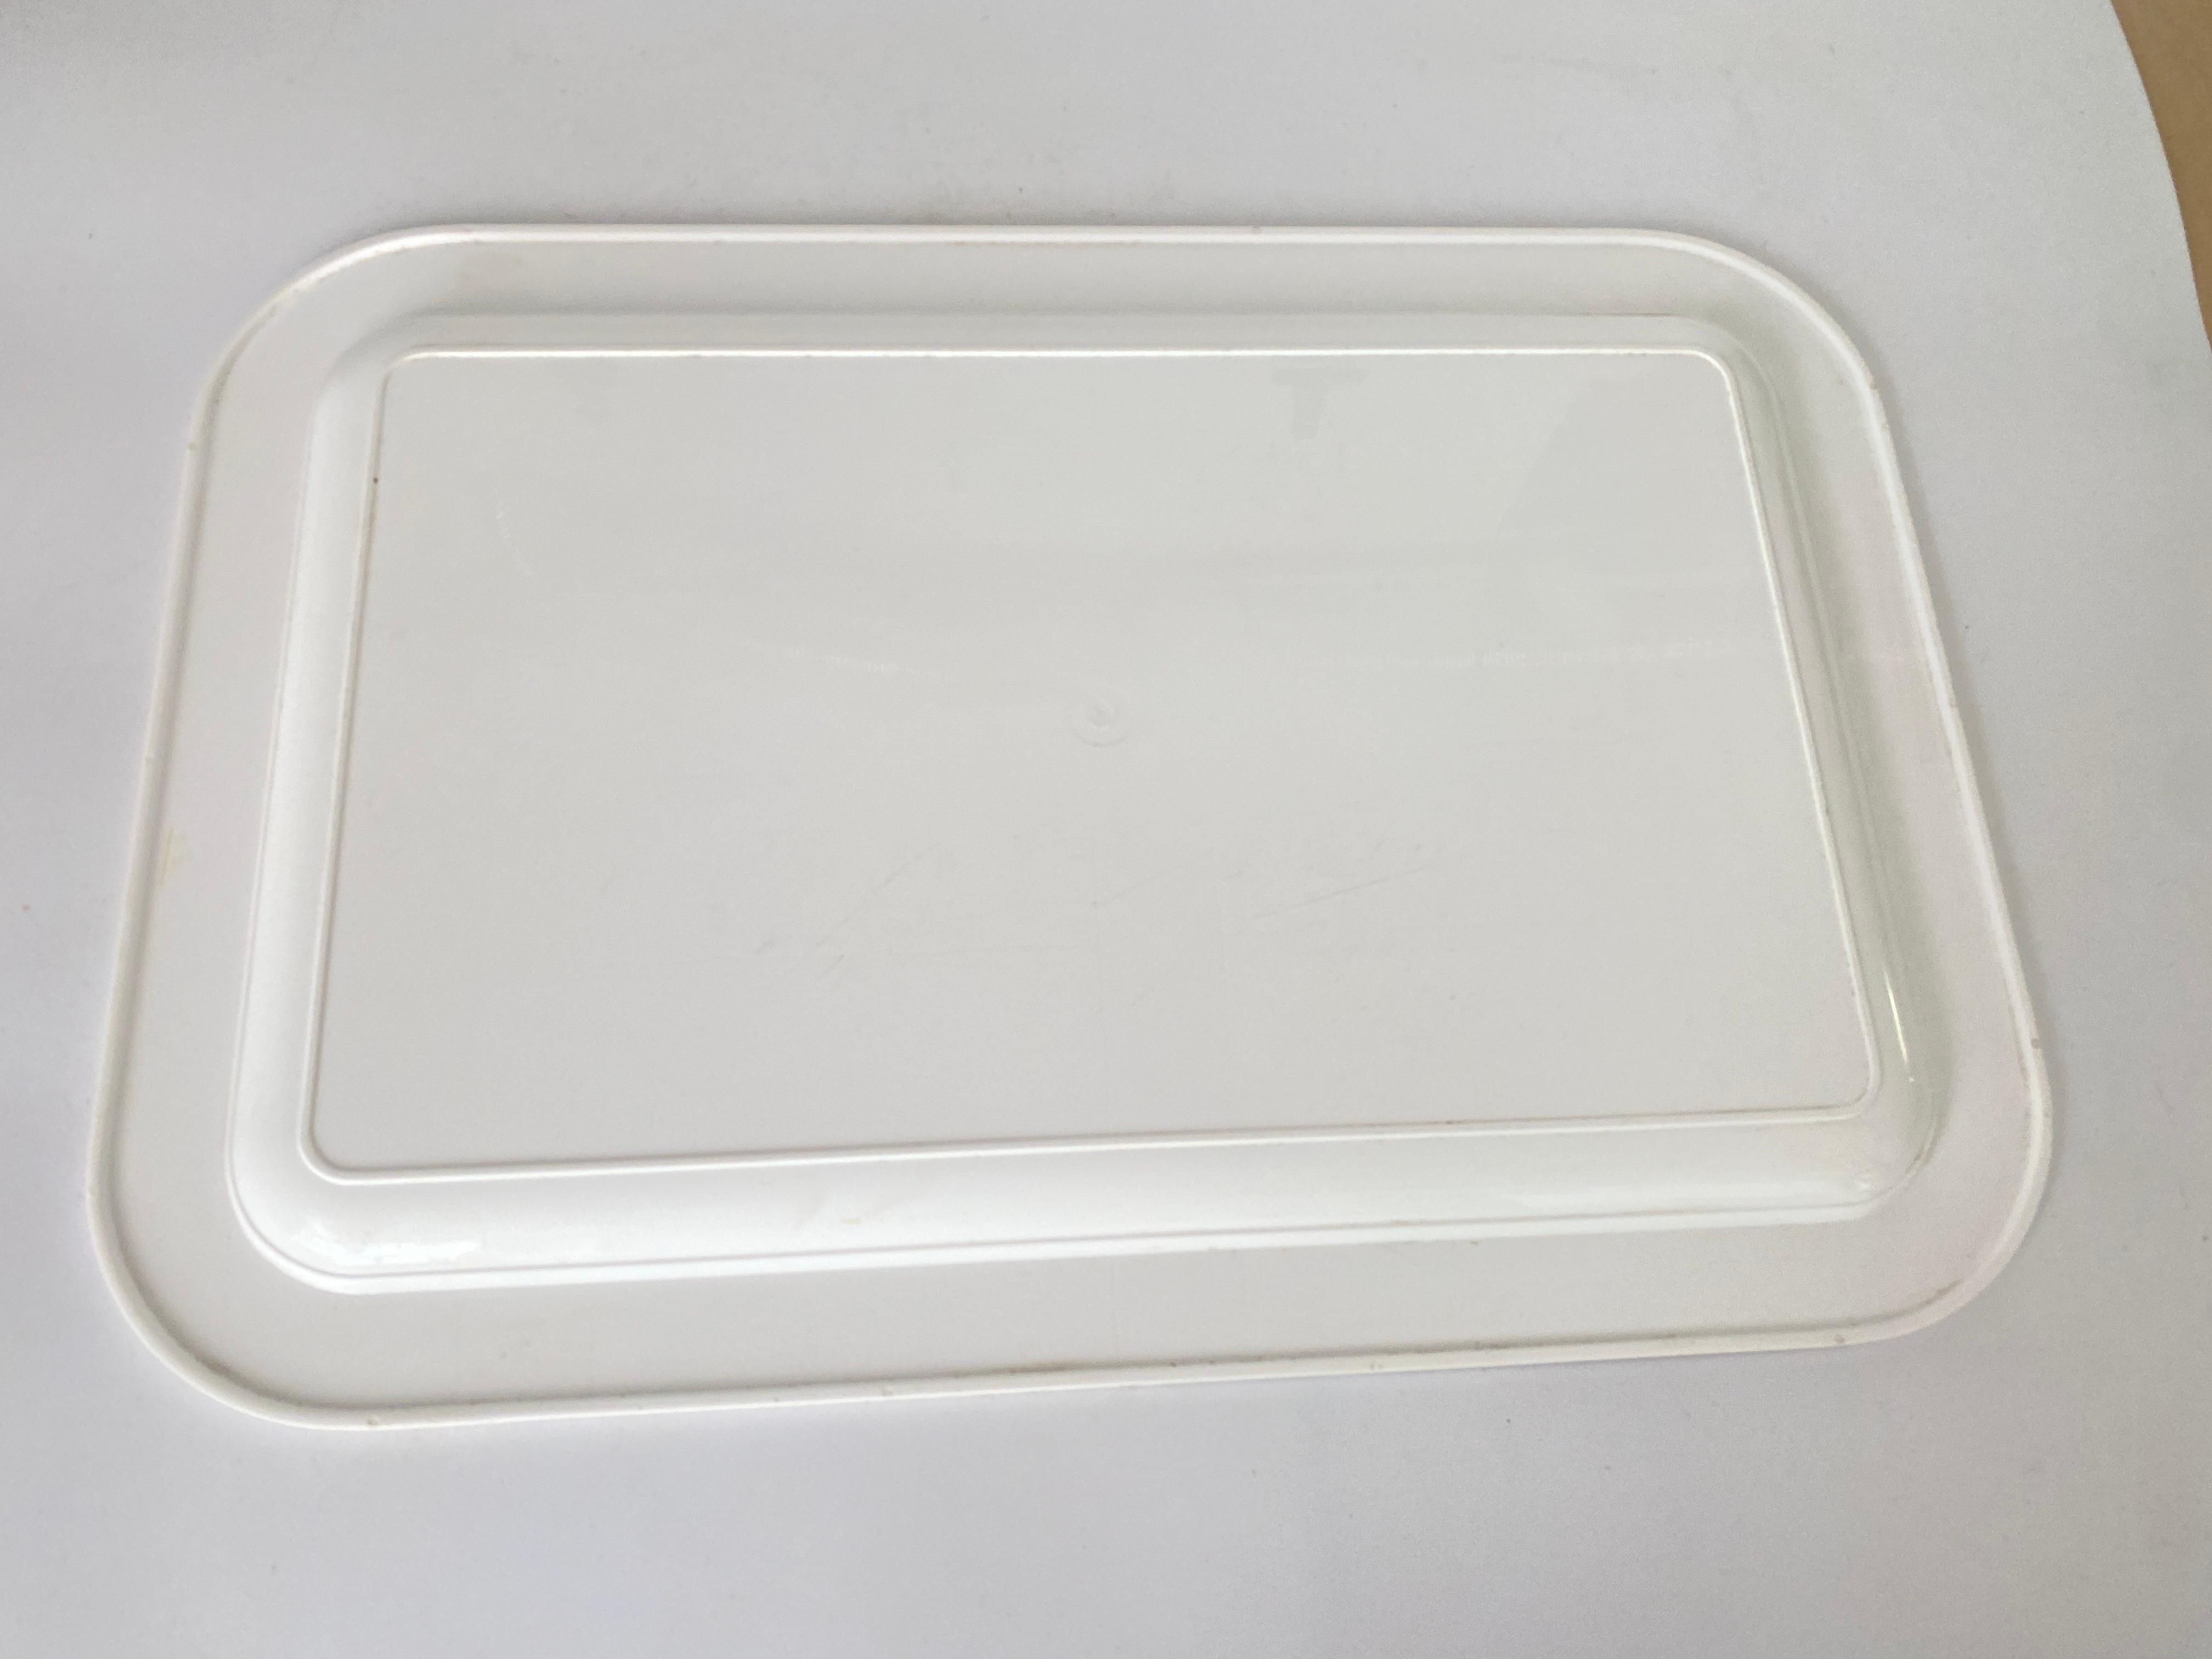 Diese  Tablett oder Platte ist aus Frankreich. Es wurde in den 1970er Jahren hergestellt.
Weiß, gelb und grau Farbe.
Kunststoff